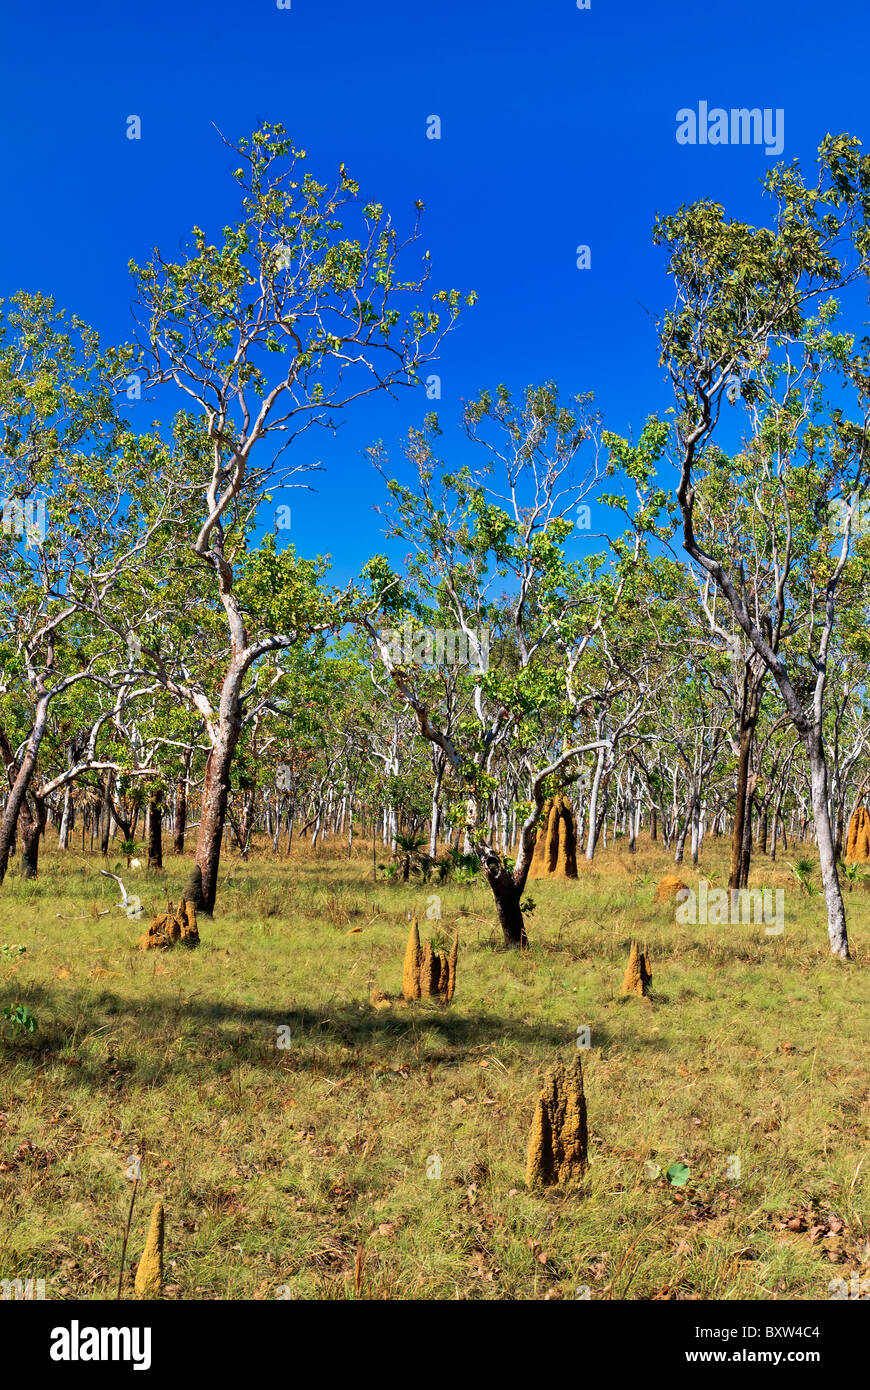 Termite mound, Kakadu National Park, Australia Stock Photo